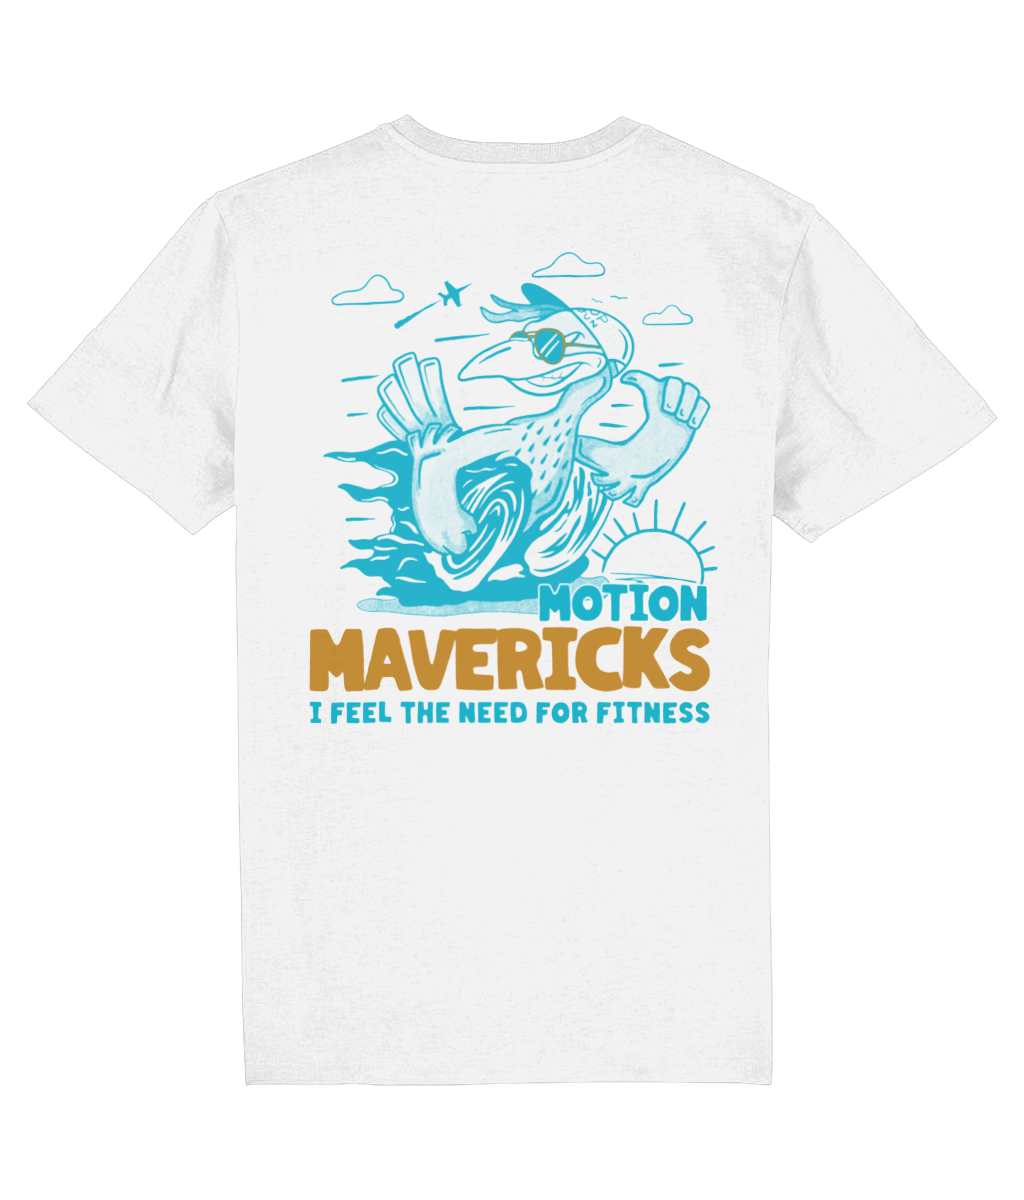 Motion mavericks t-shirt - Motion training